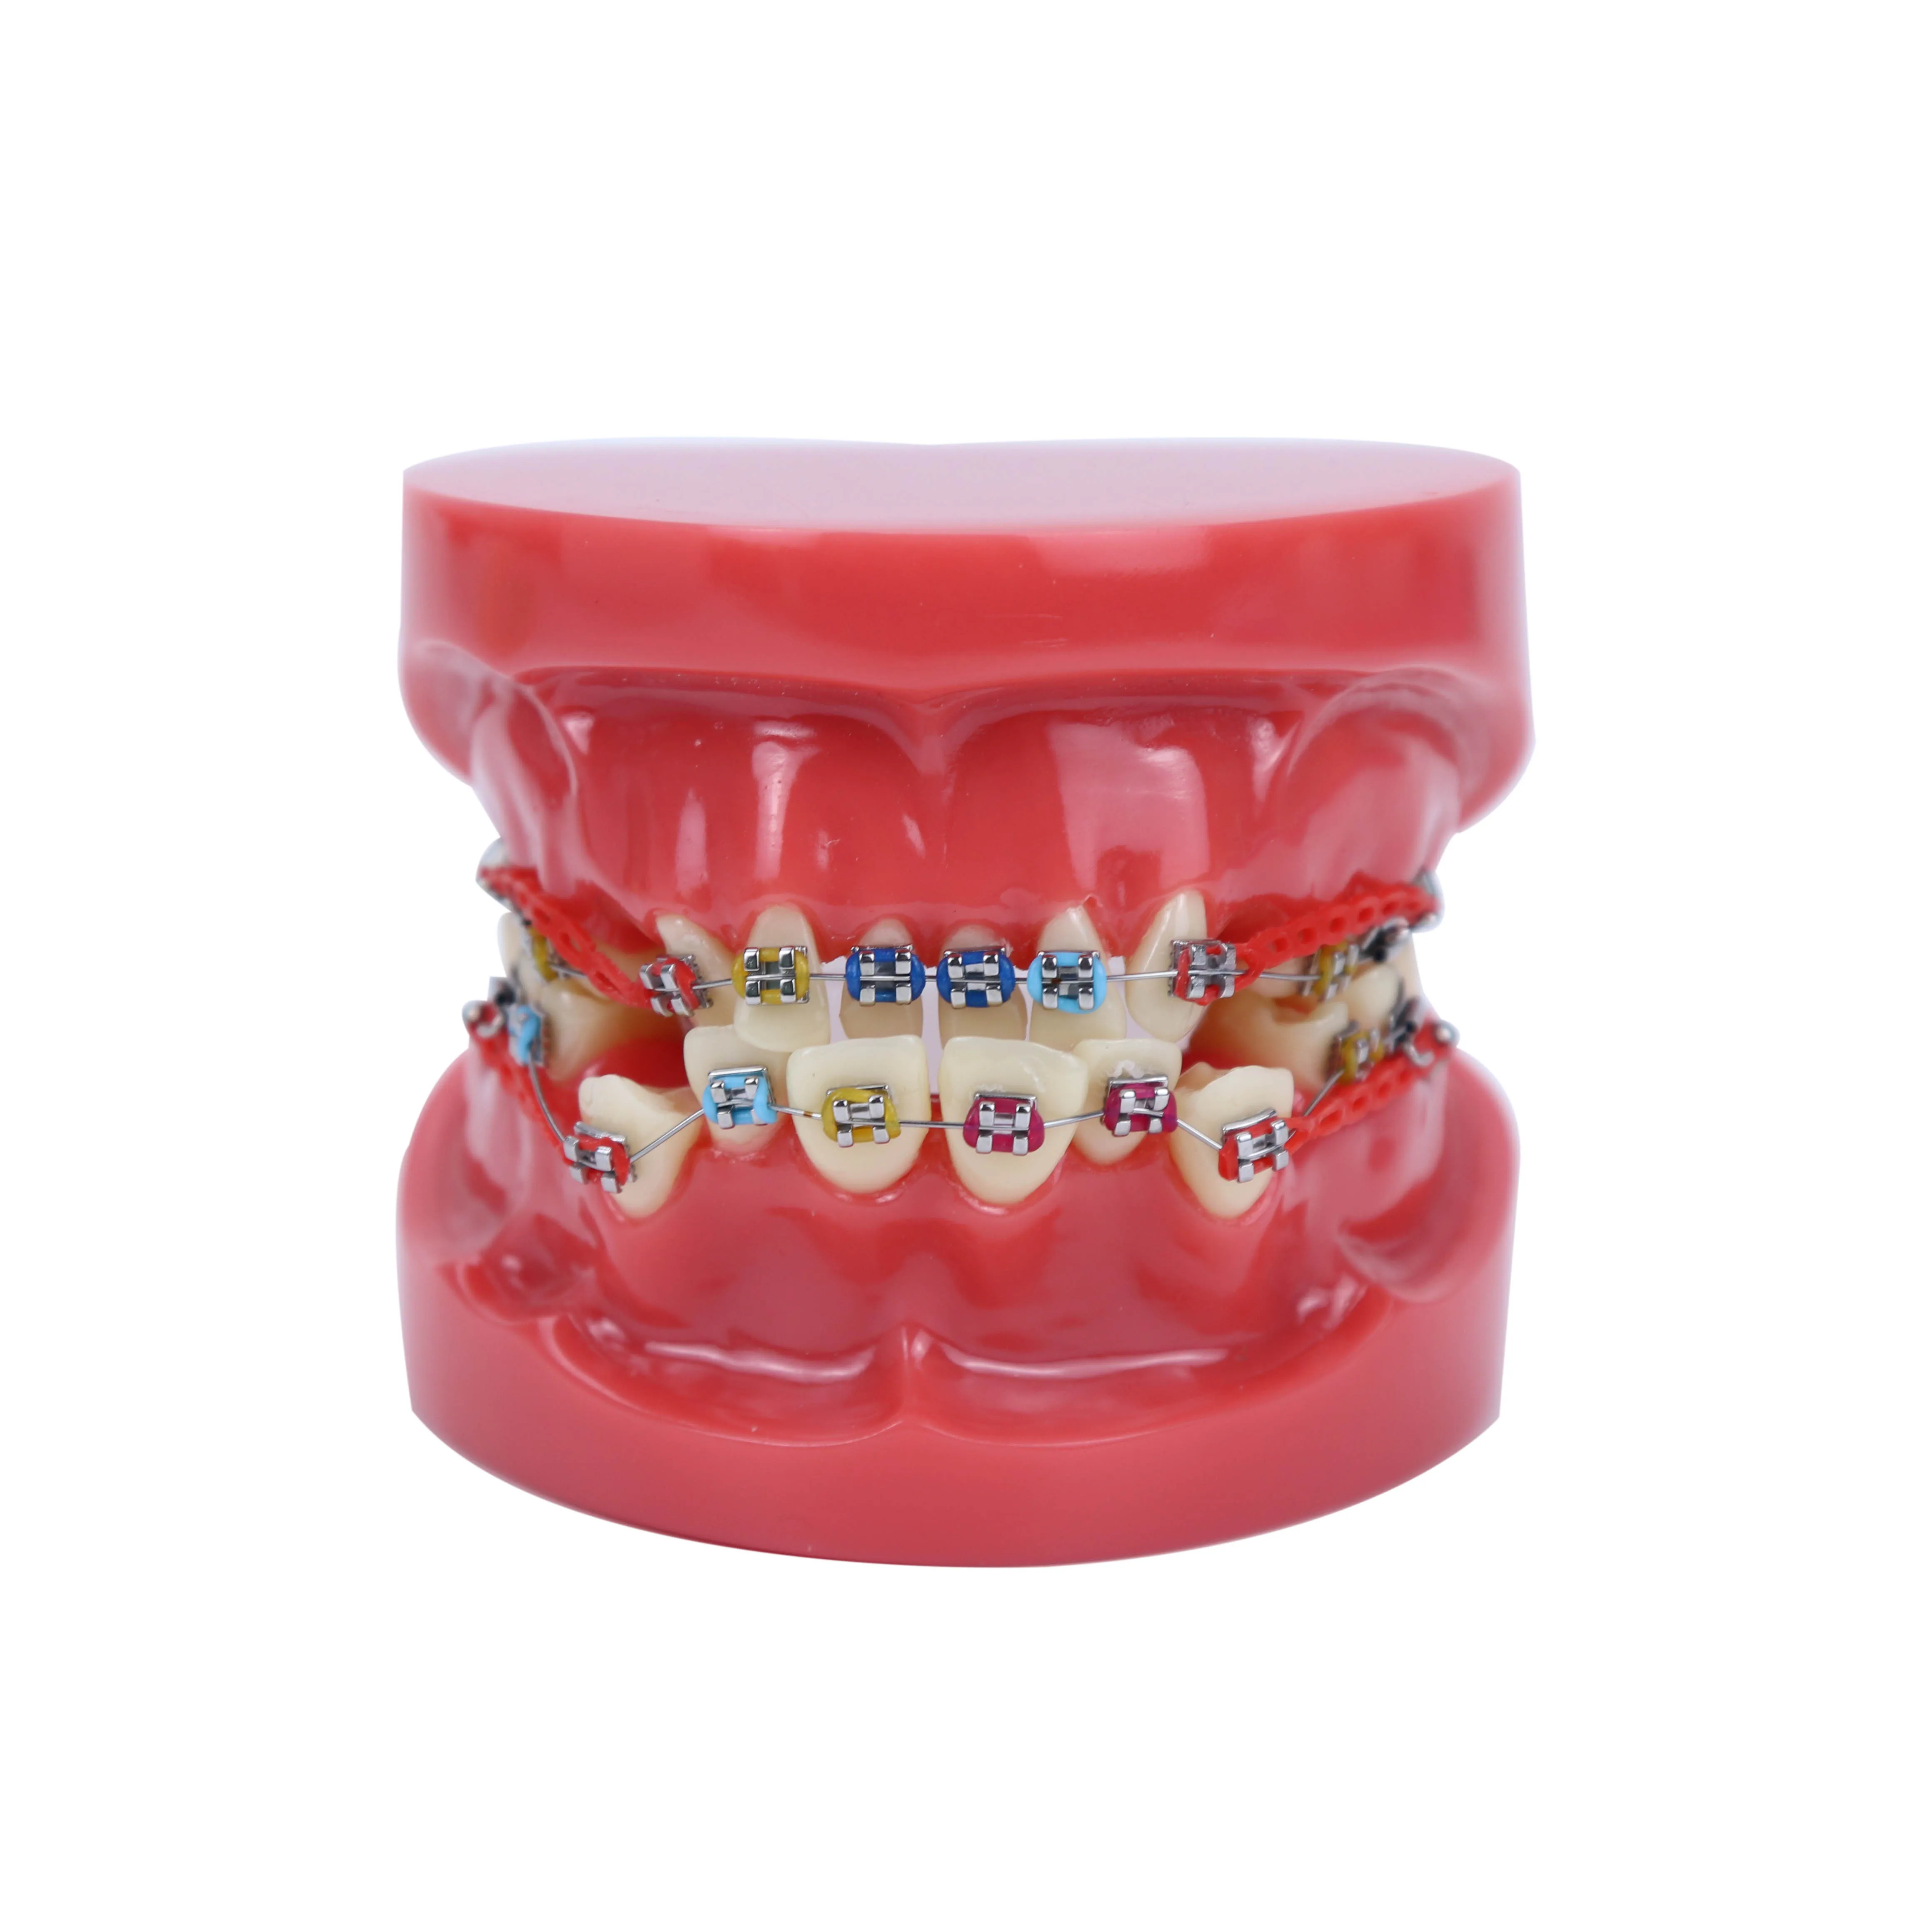 שיניים אורתודונטיה שיניים דגם מתכת הסוגר קשת חוט תיקון אורתודונטי דגם עם שיניים סוגריים